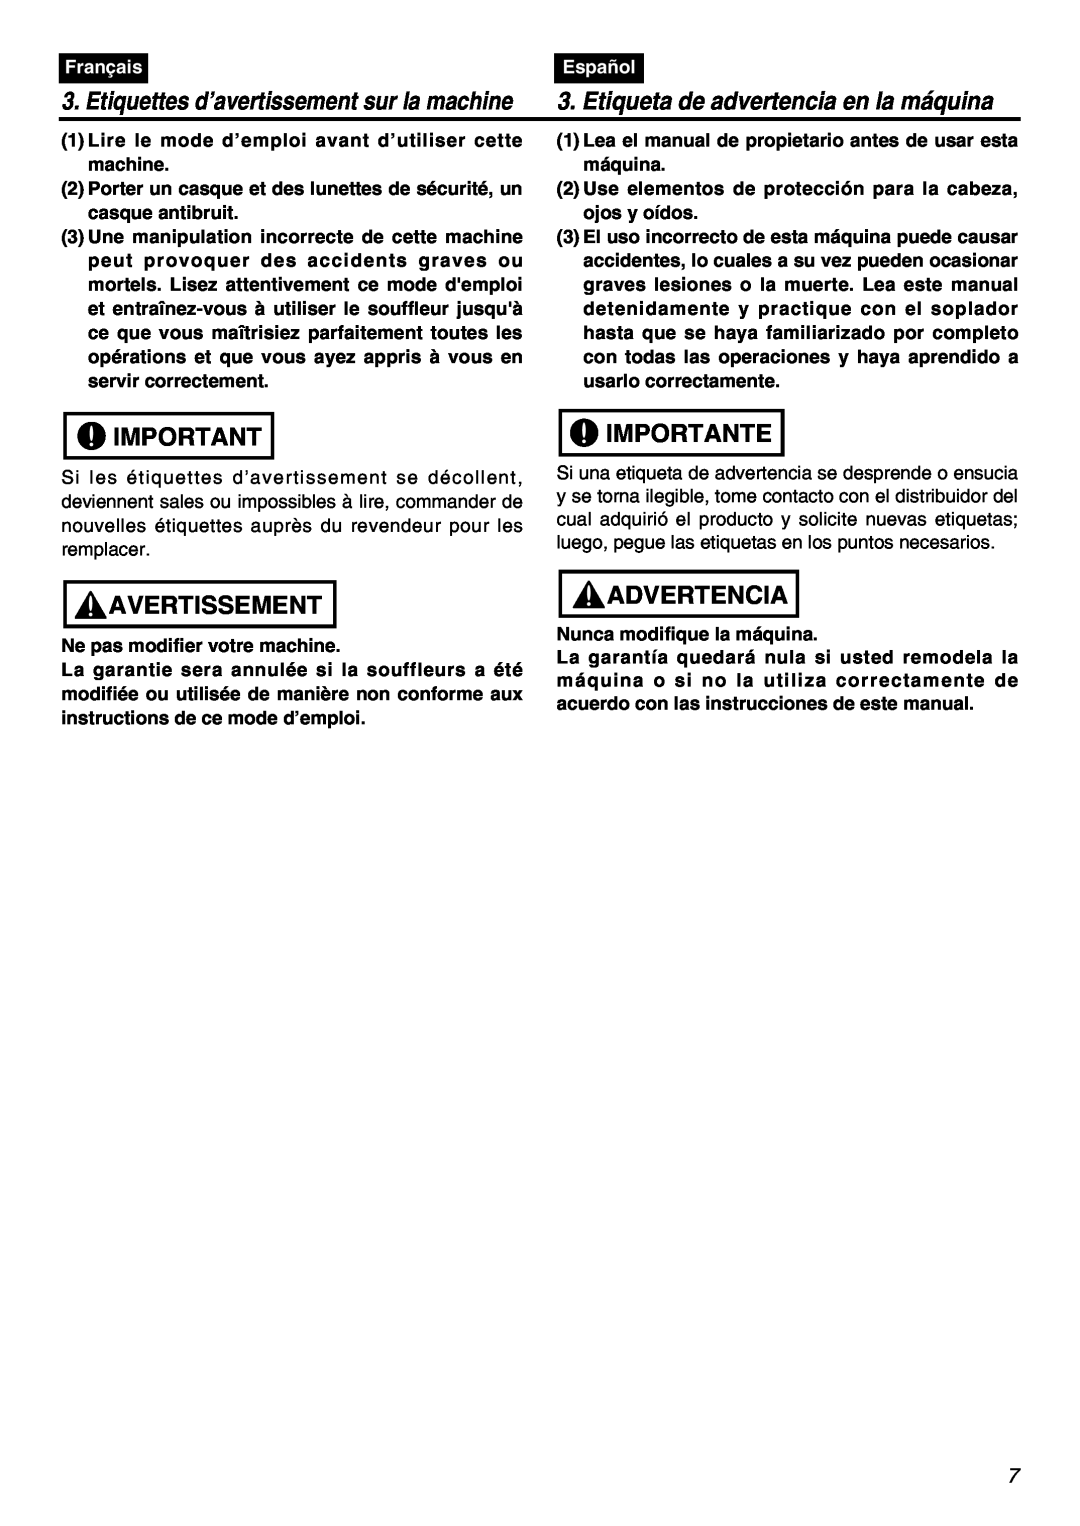 Zenoah EBZ7100RH-CA Avertissement, Importante, Advertencia, Etiquettes d’avertissement sur la machine, Français, Español 